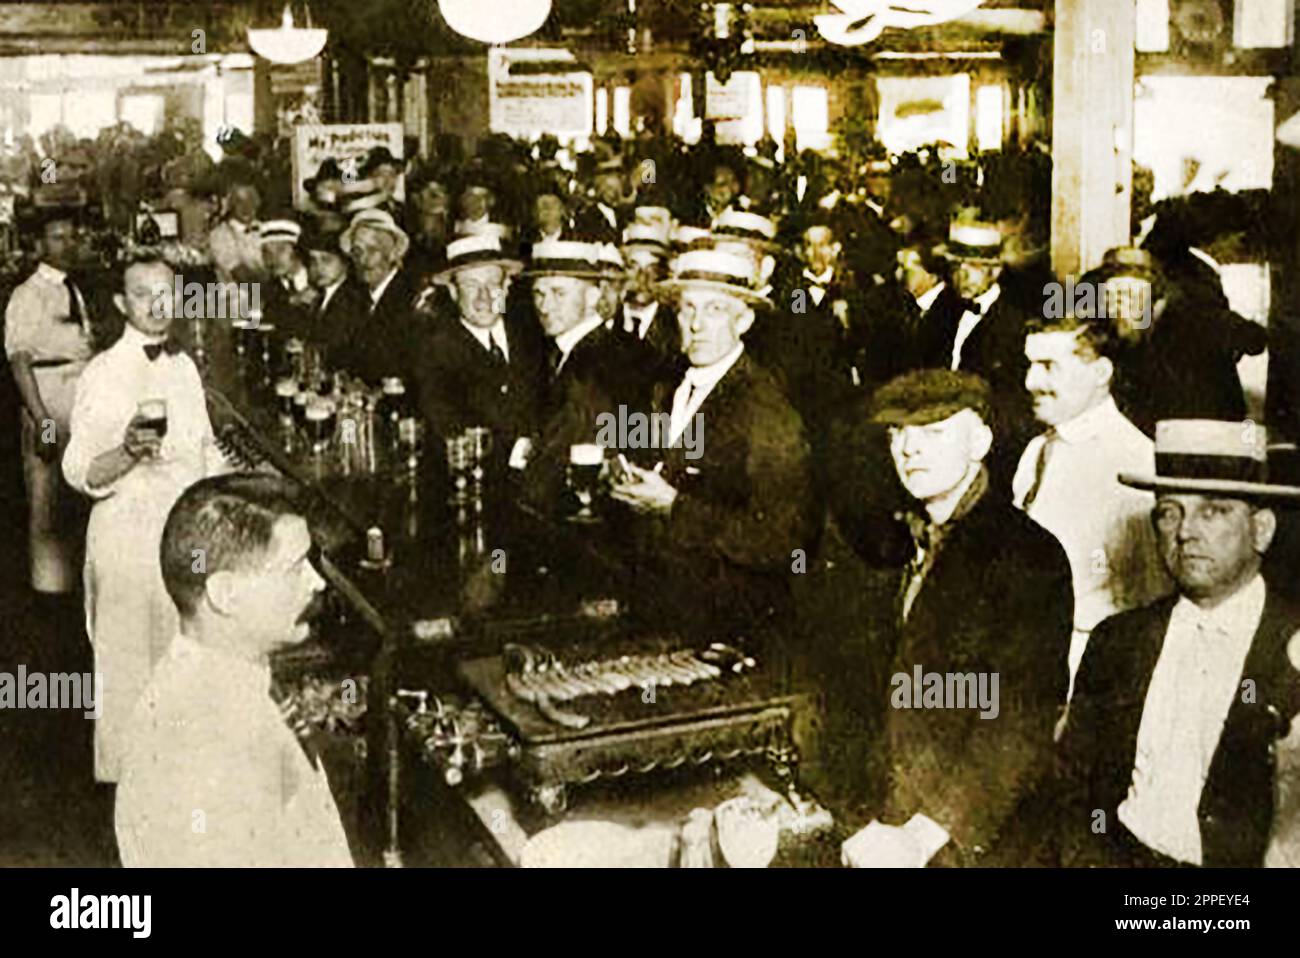 Une vieille photo de presse montrant la scène dans une barre de saloon américaine juste avant l'imposition de l'interdiction. Banque D'Images